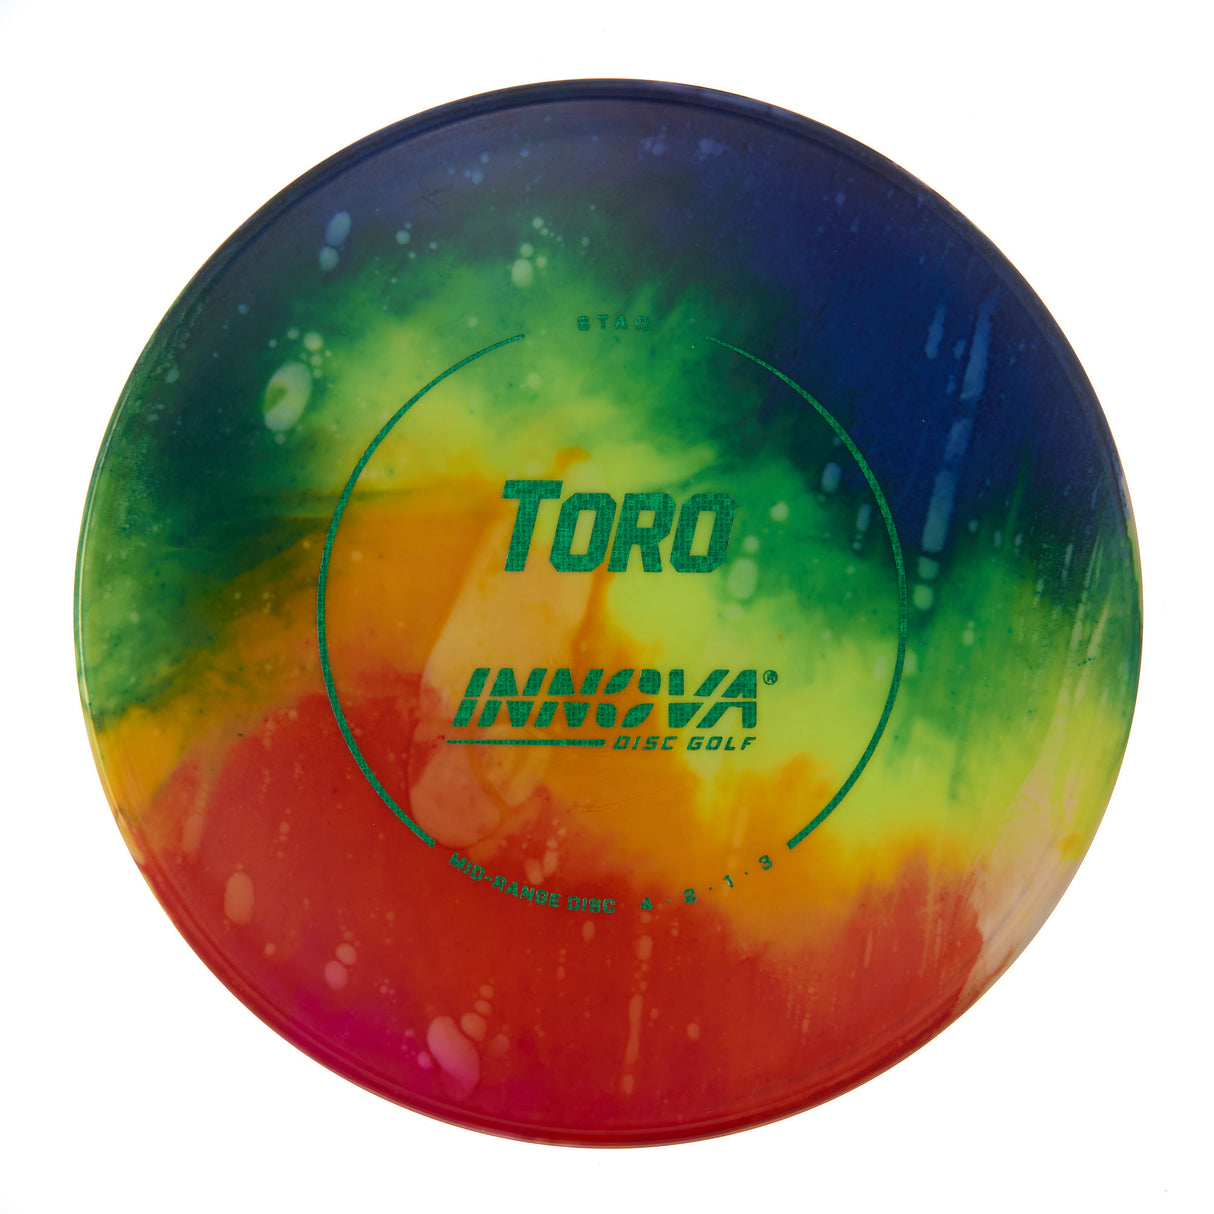 Innova Toro - I Dye Star 174g | Style 0016